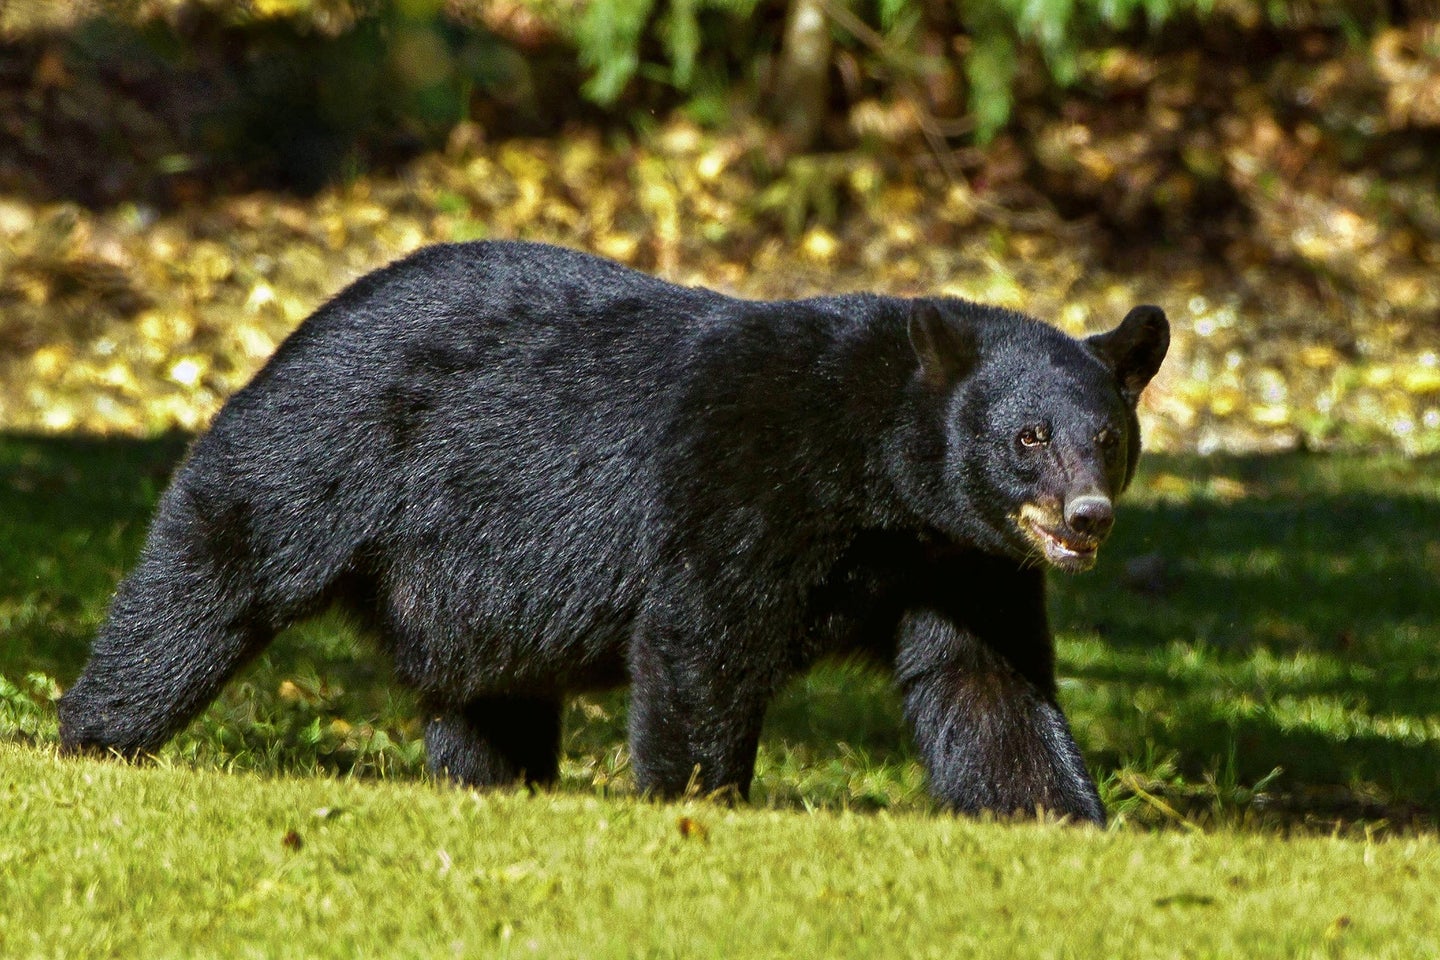 black bear walks across lawn